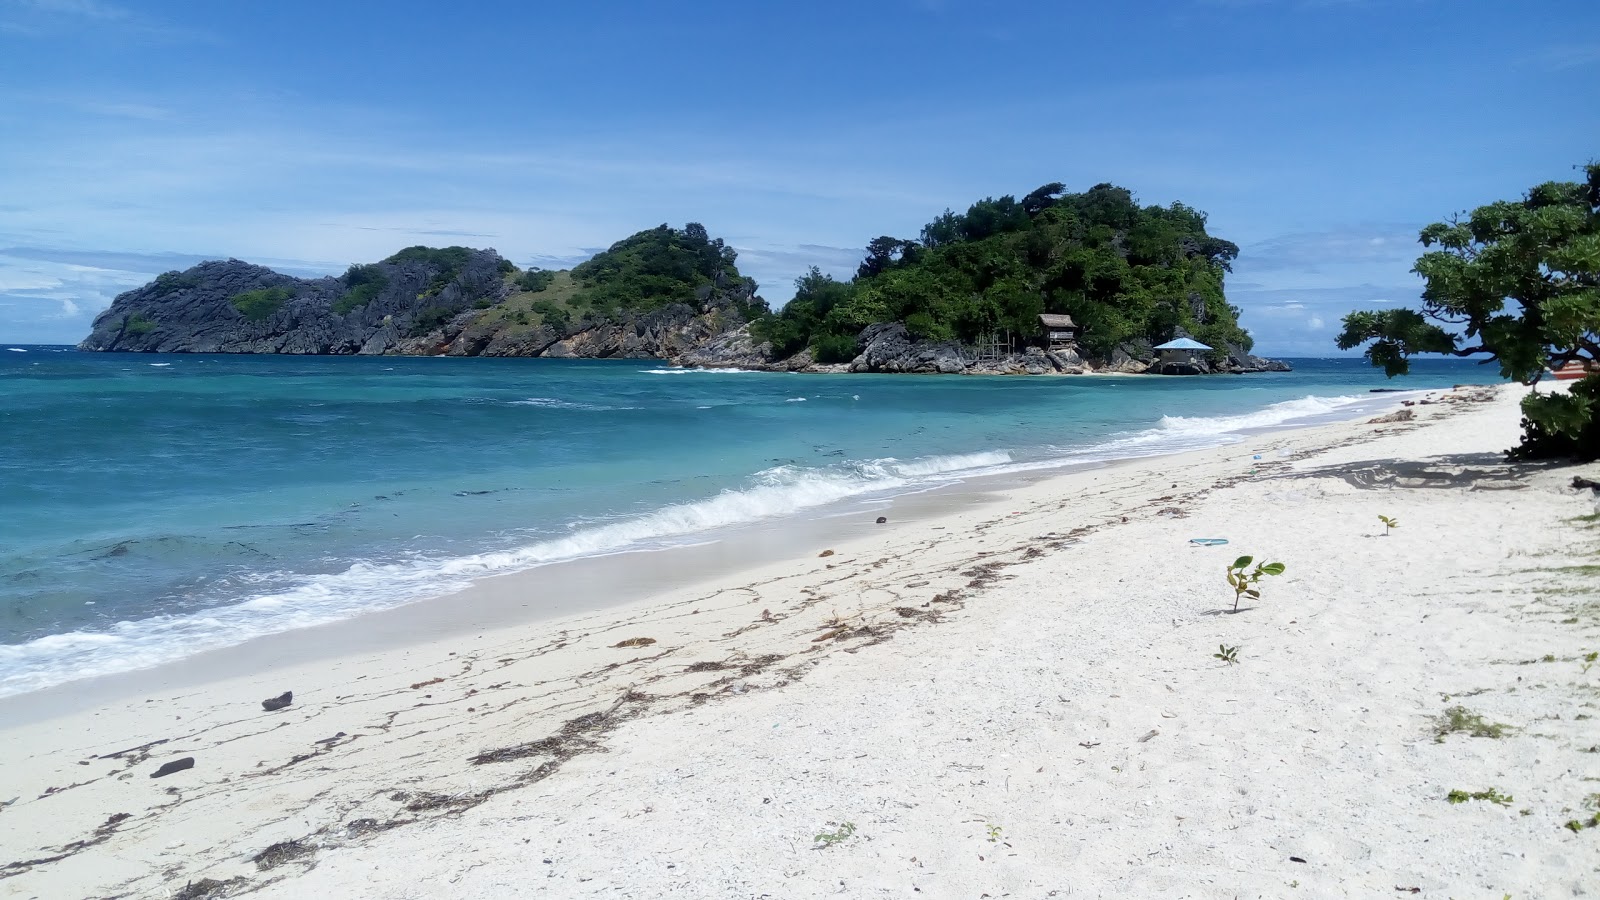 Φωτογραφία του Buyayao Island Resort - δημοφιλές μέρος μεταξύ λάτρεις της χαλάρωσης